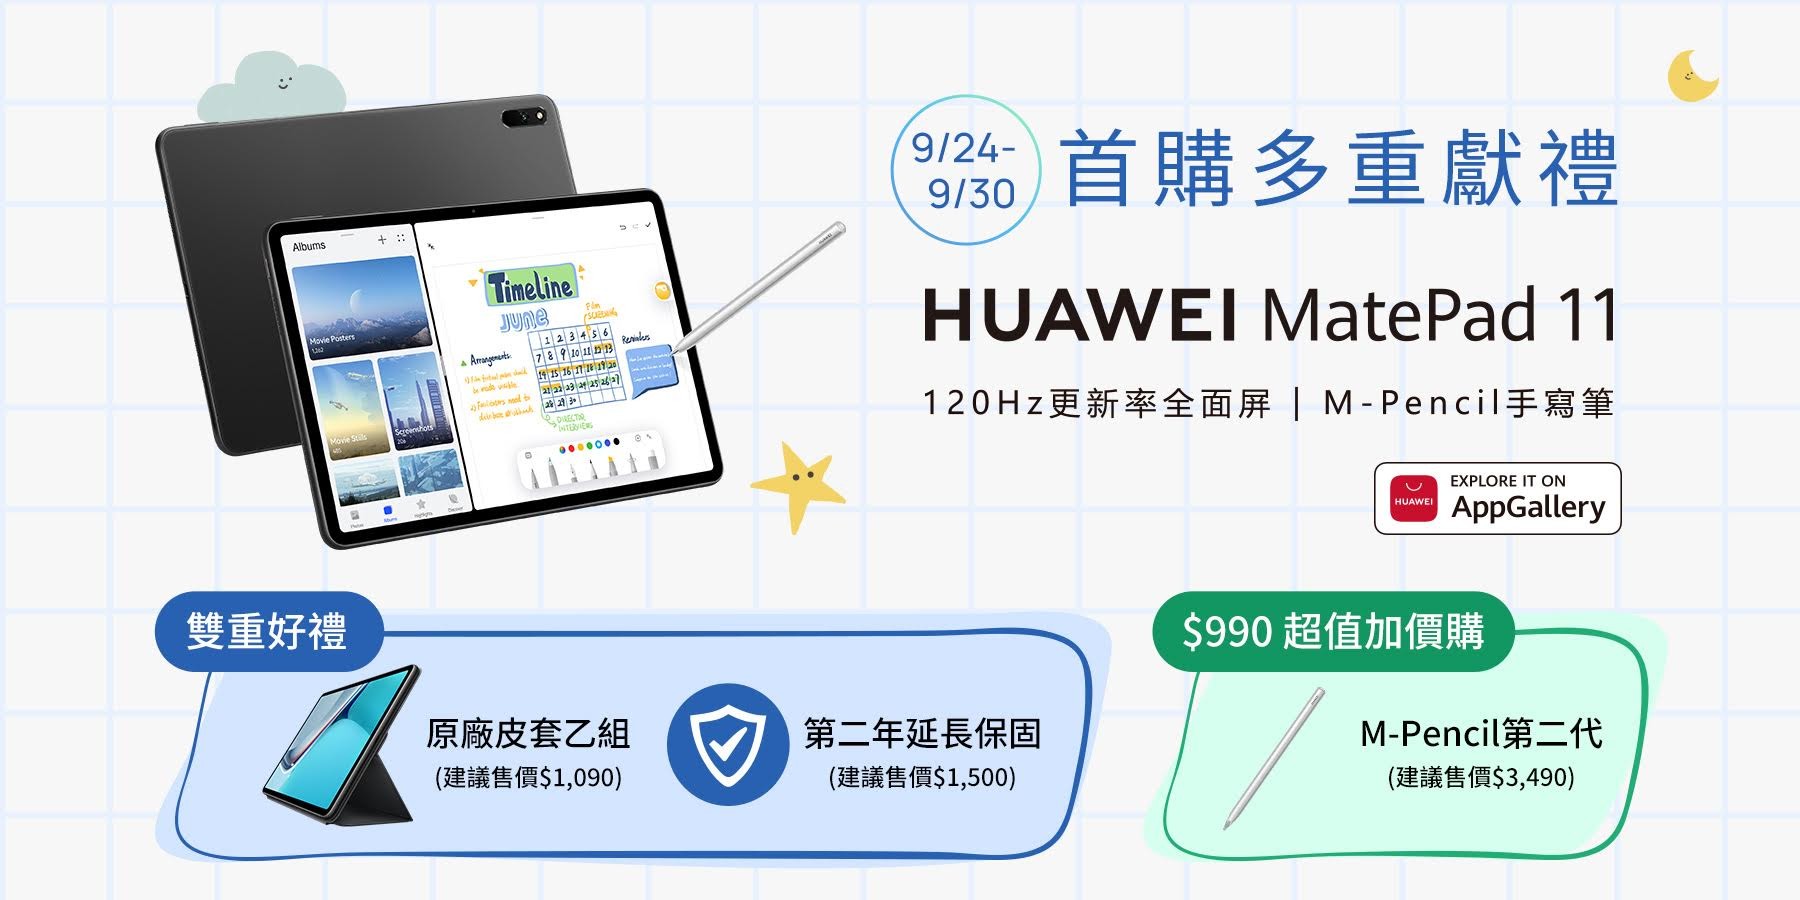 華為推出擁有120Hz 更新螢幕、 Snapdragon 865 與Harmony OS 的HUAWEI